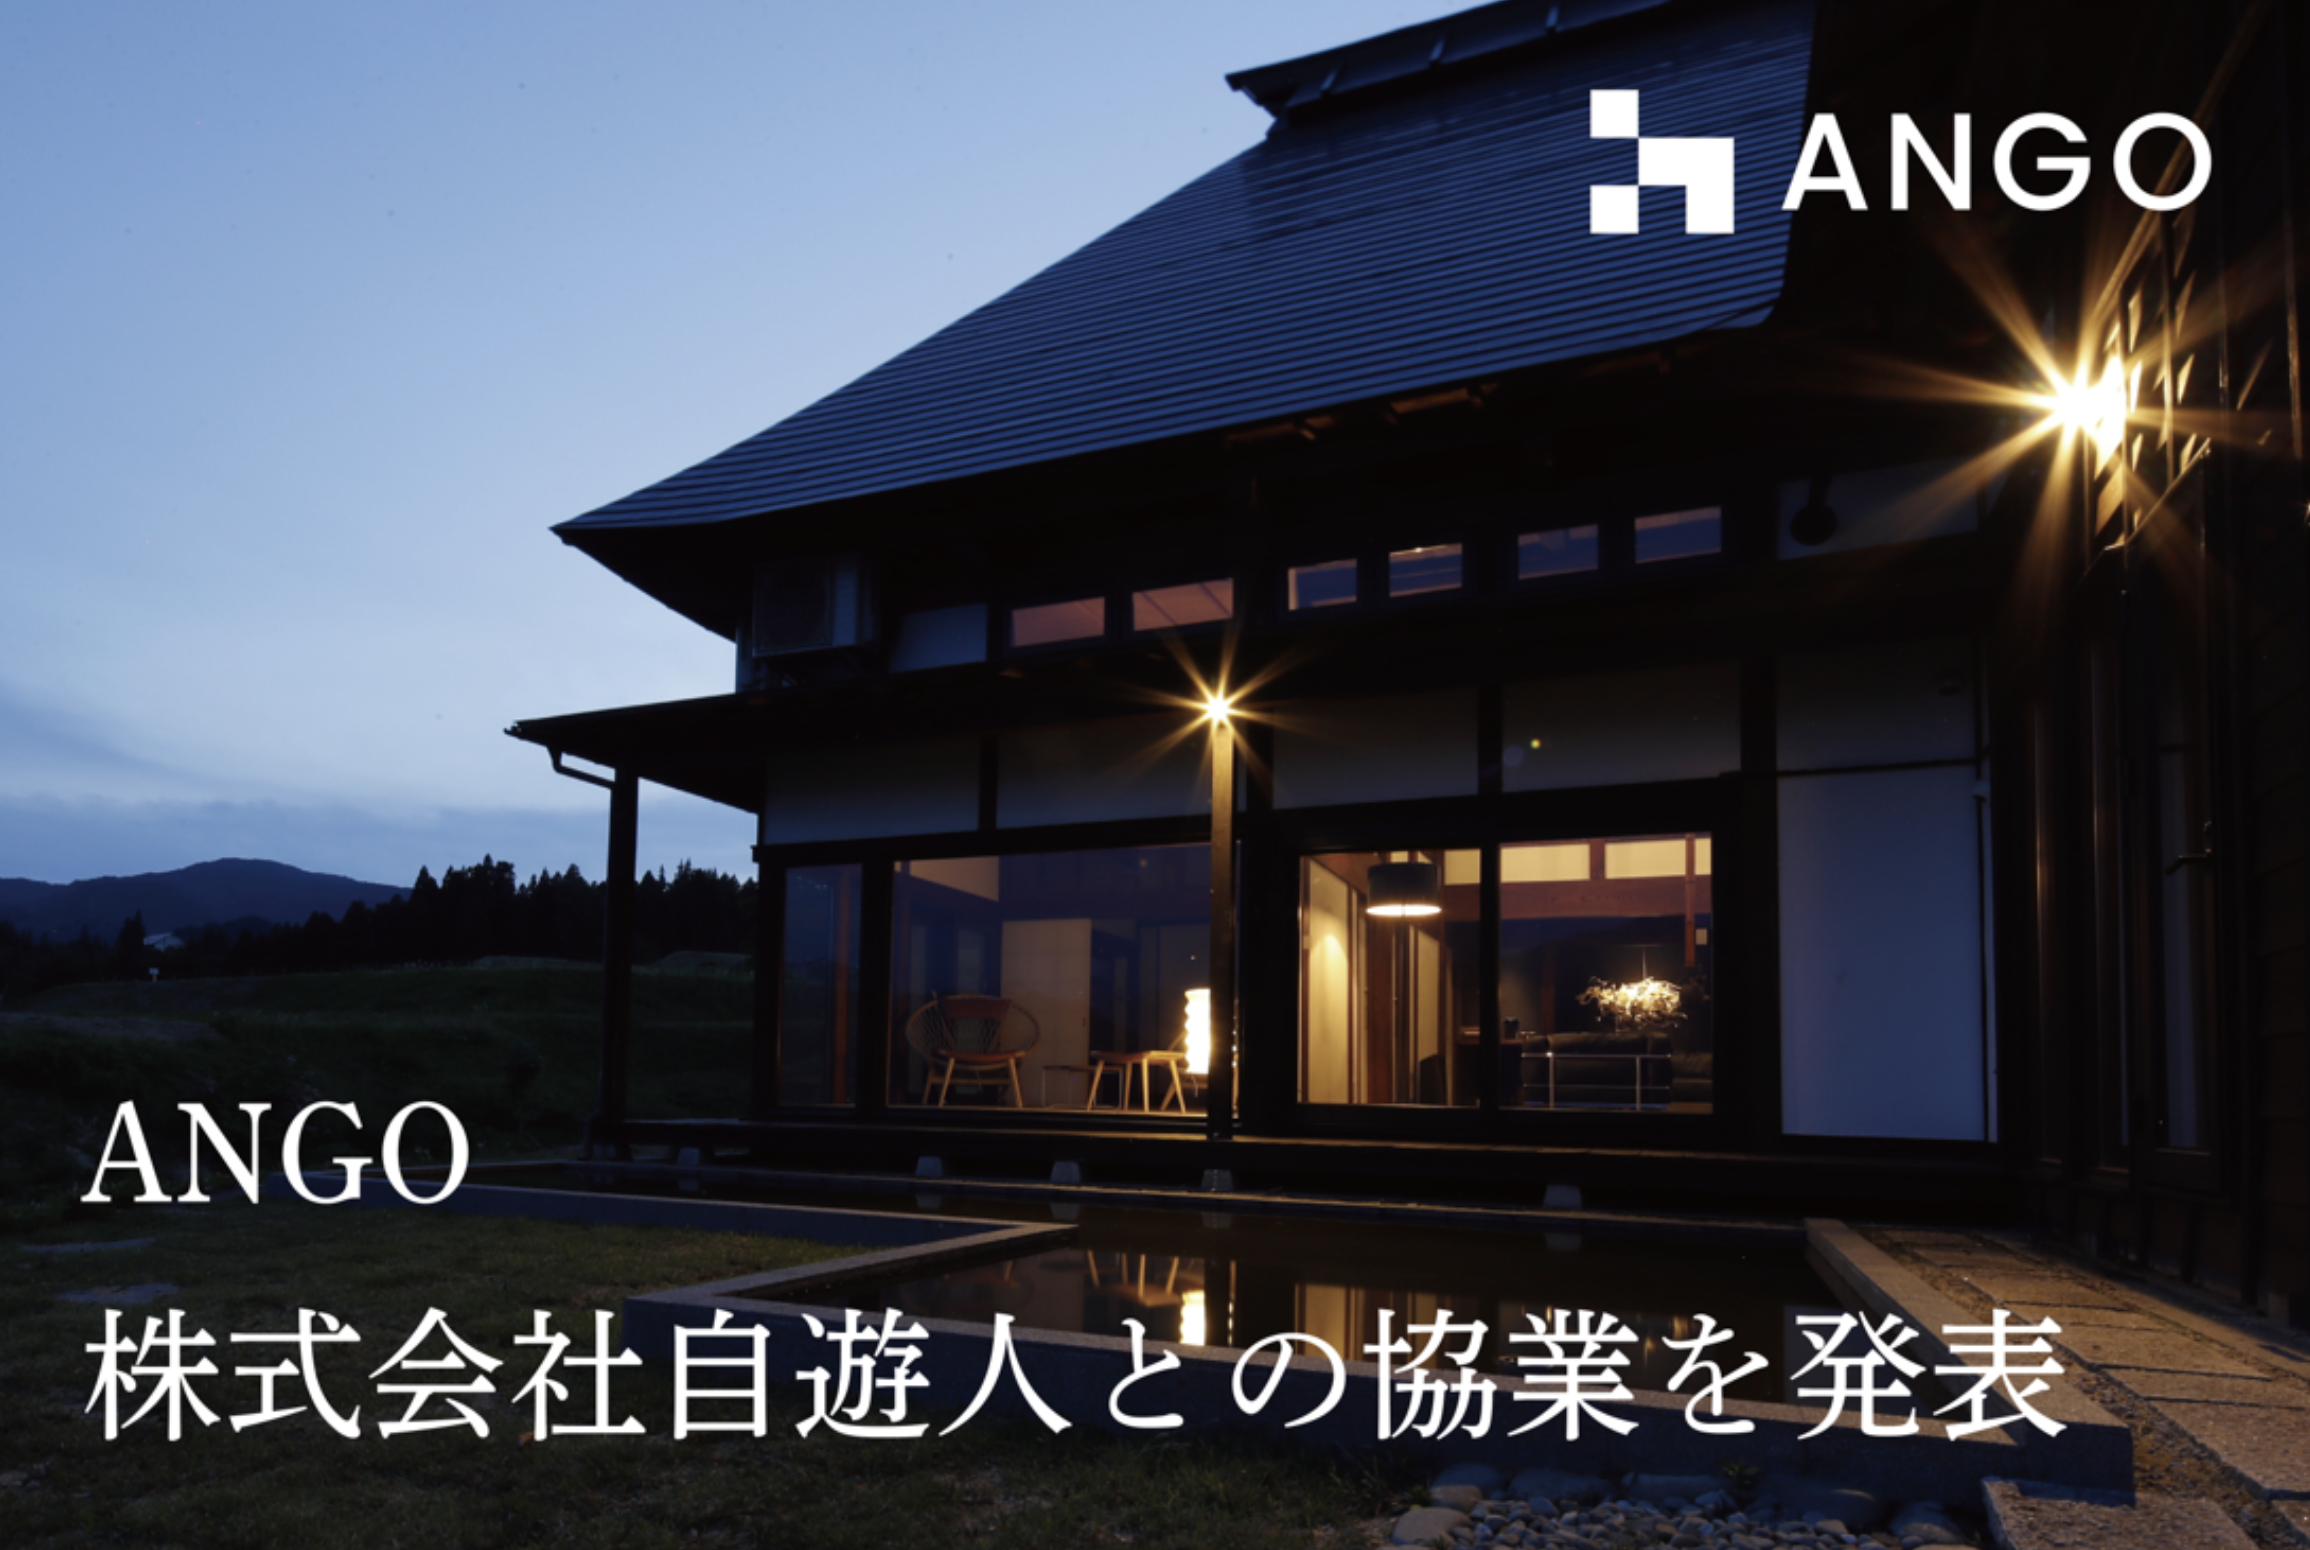 ANGOが日本の空き家問題の解決を目標とした合同会社(LLC)型DAOの設立を推進のサブ画像2